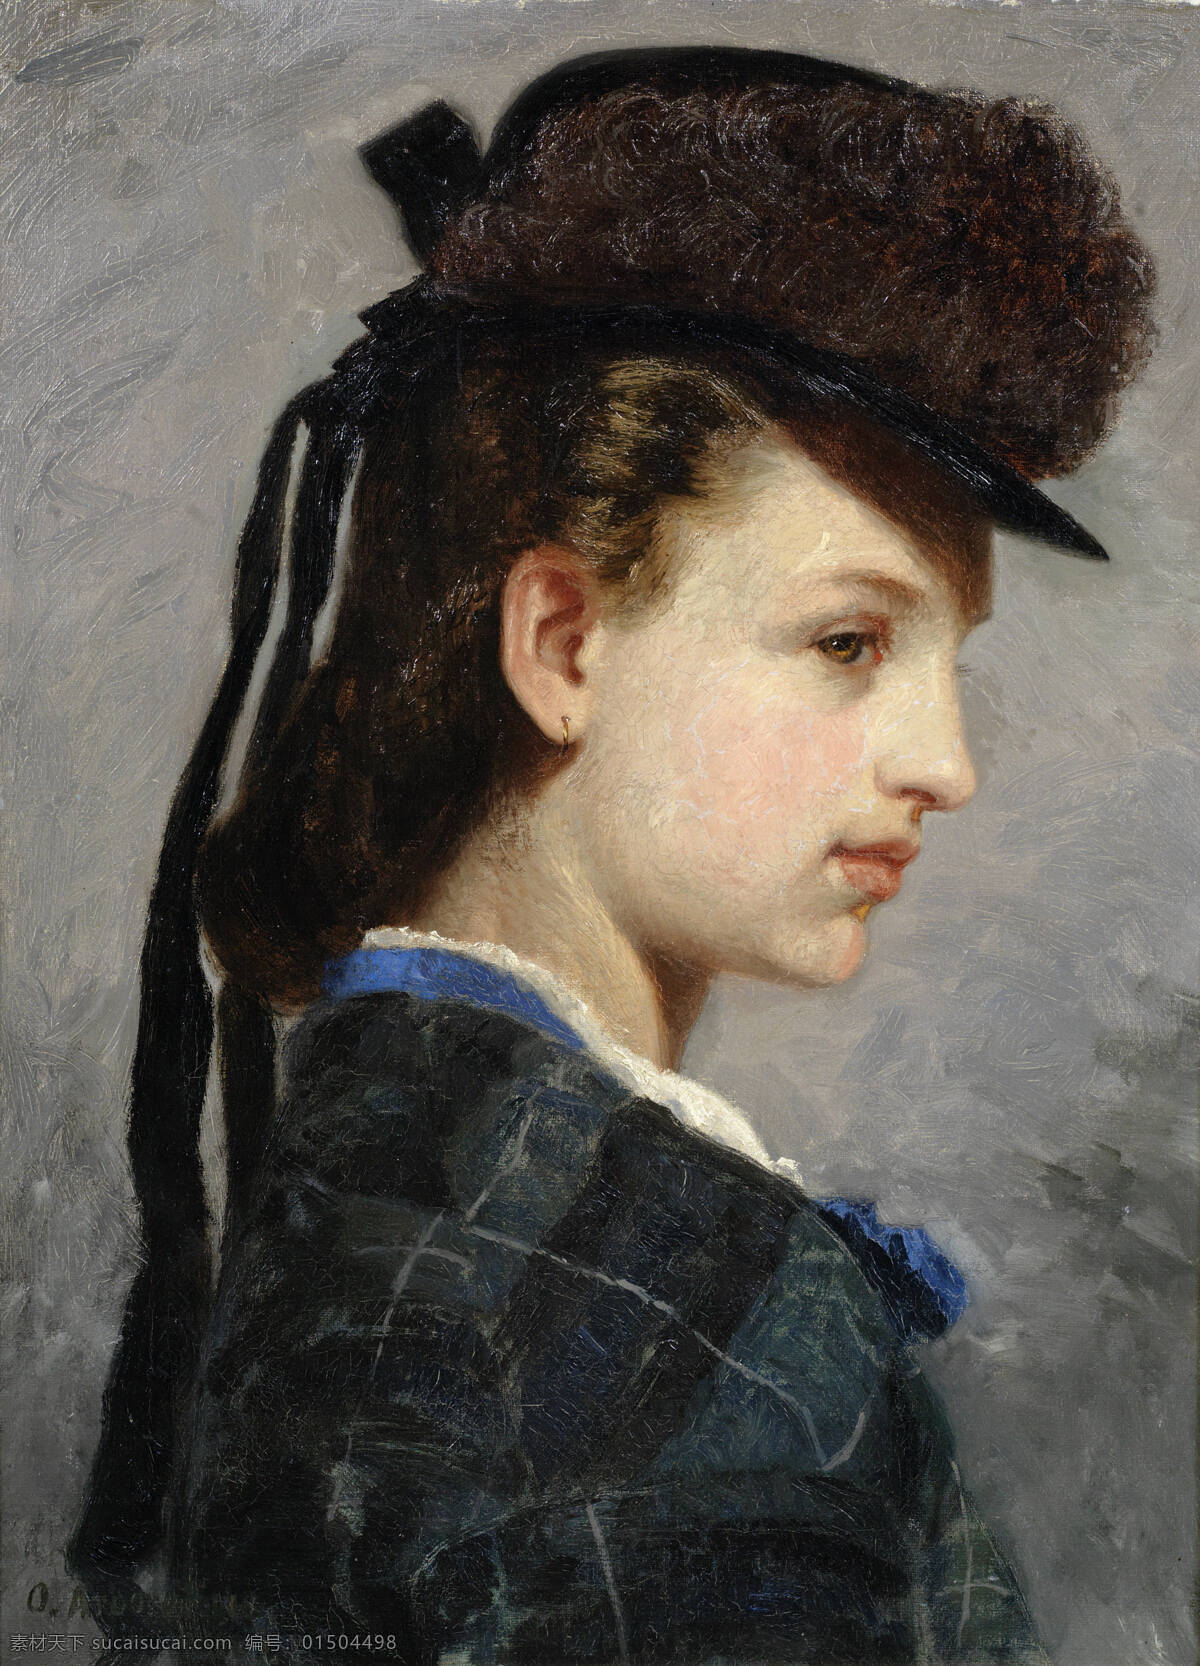 年轻女士 贵族之家 姑娘 黑色帽子 冬装 半身肖像 19世纪油画 油画 文化艺术 绘画书法